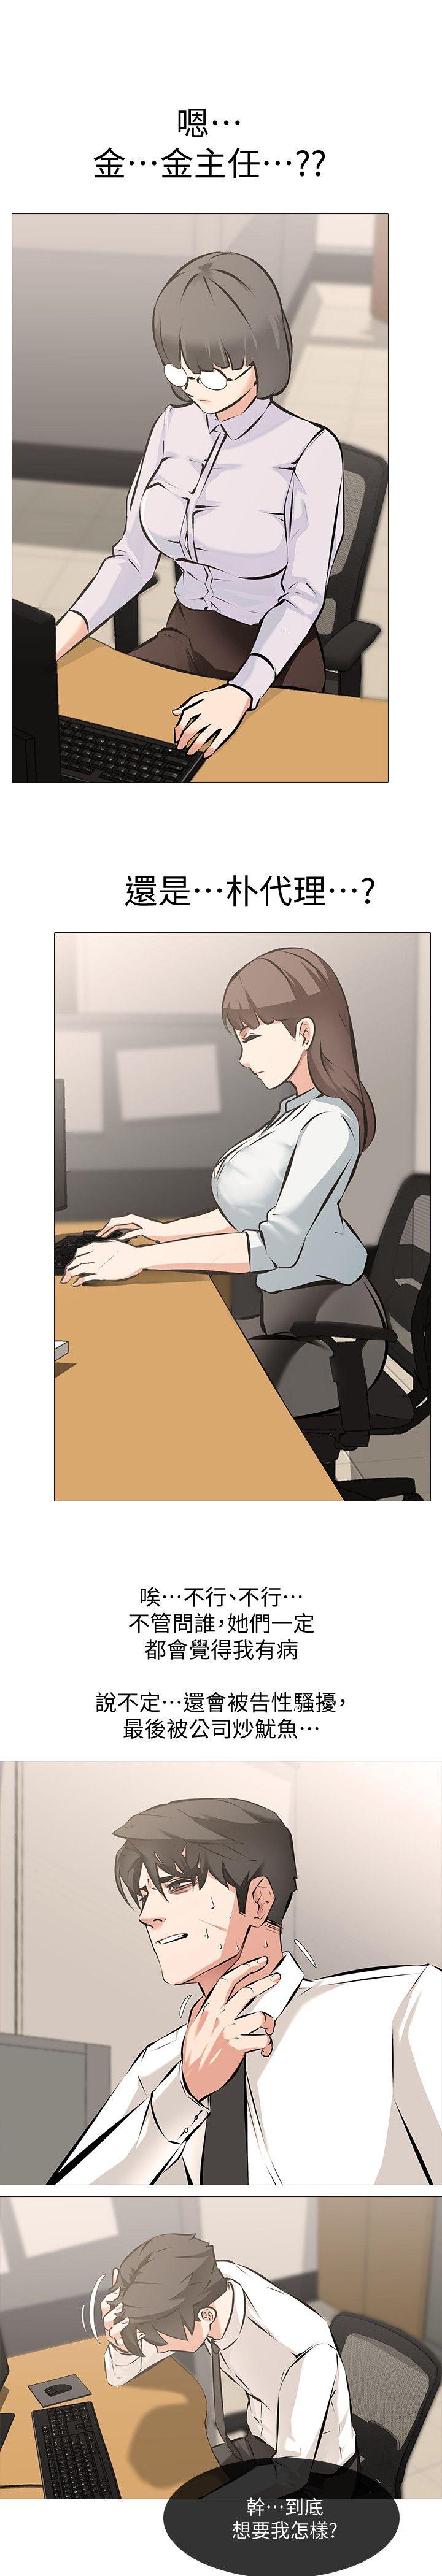 《虐妻游戏》漫画 第5话 - 第2个任务：女同事